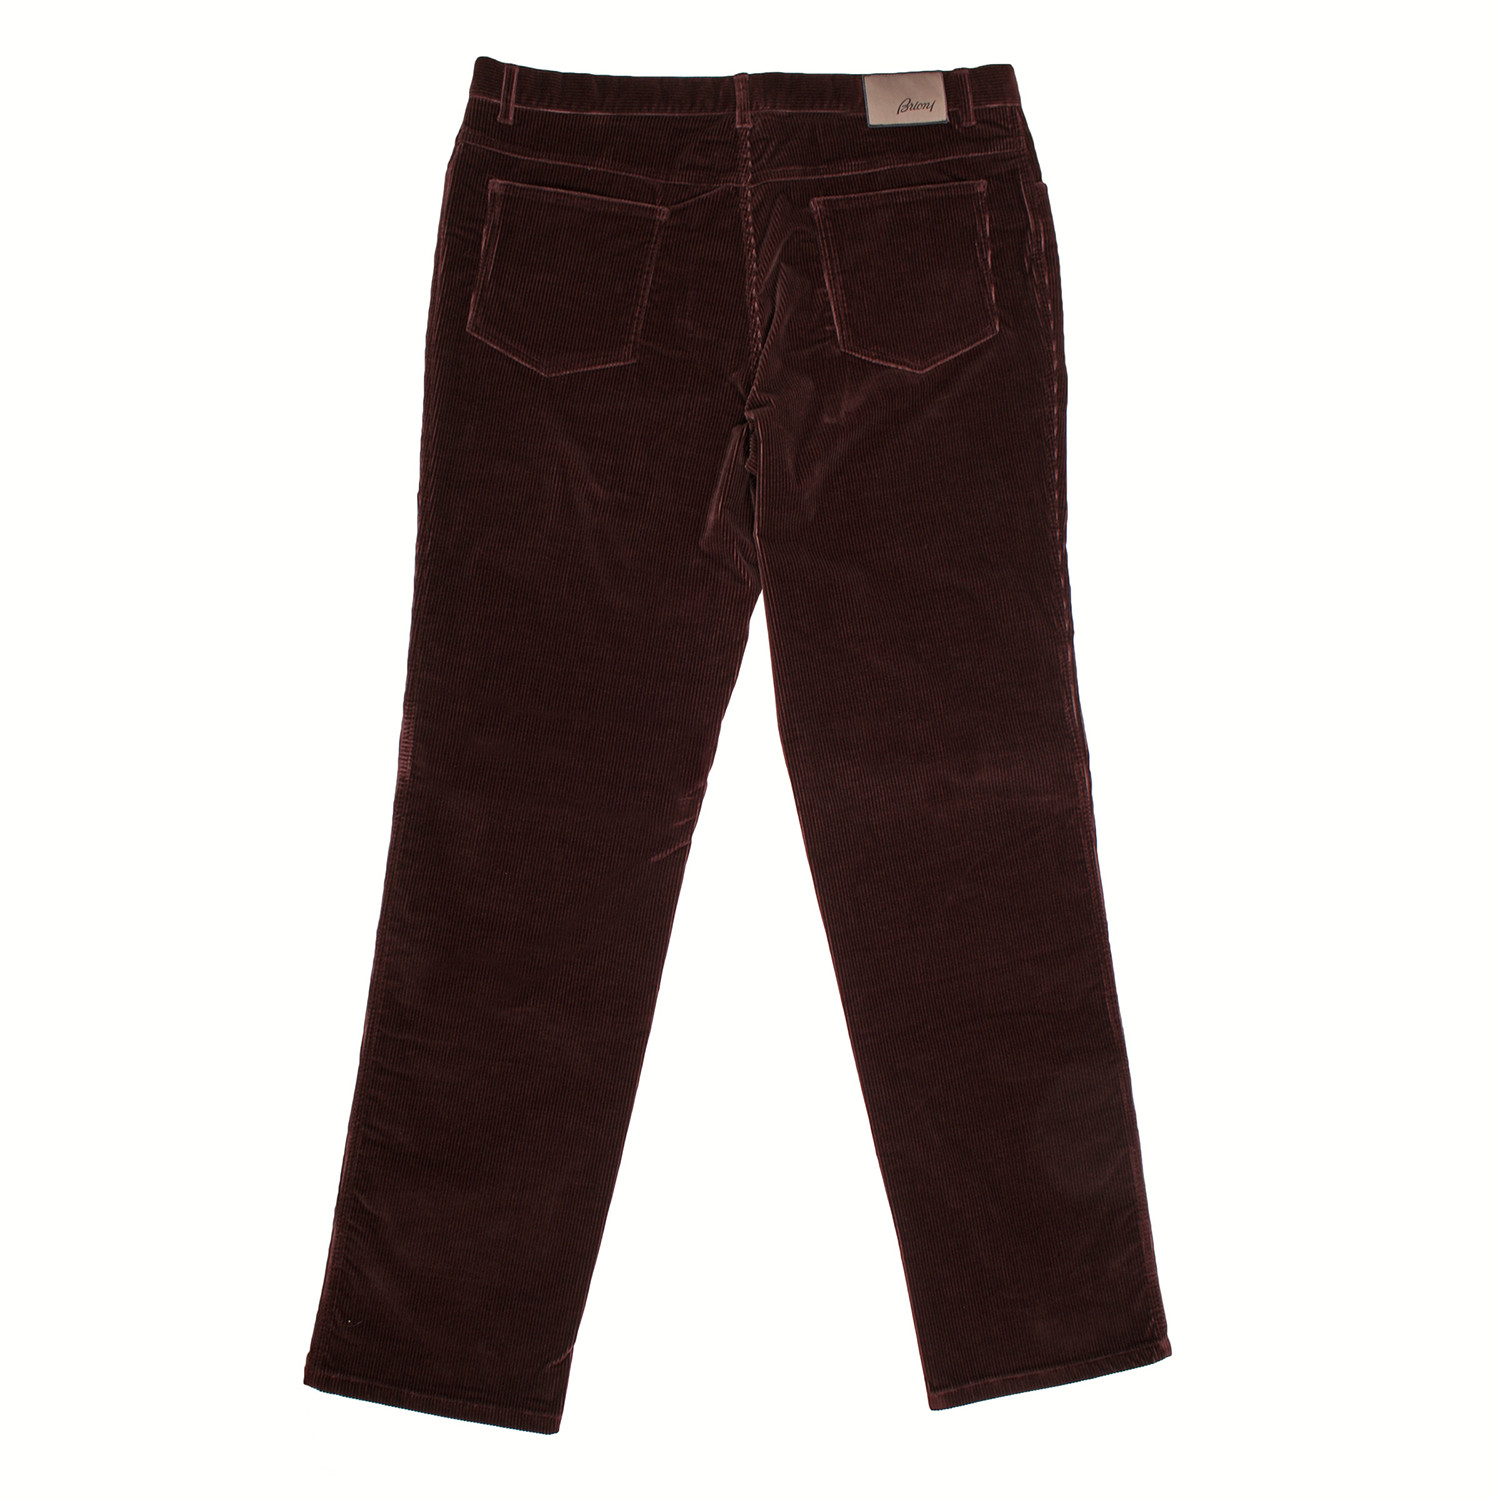 Corduroy Jean Style Pants // Burgundy (44WX32L) - Designer Fashion ...